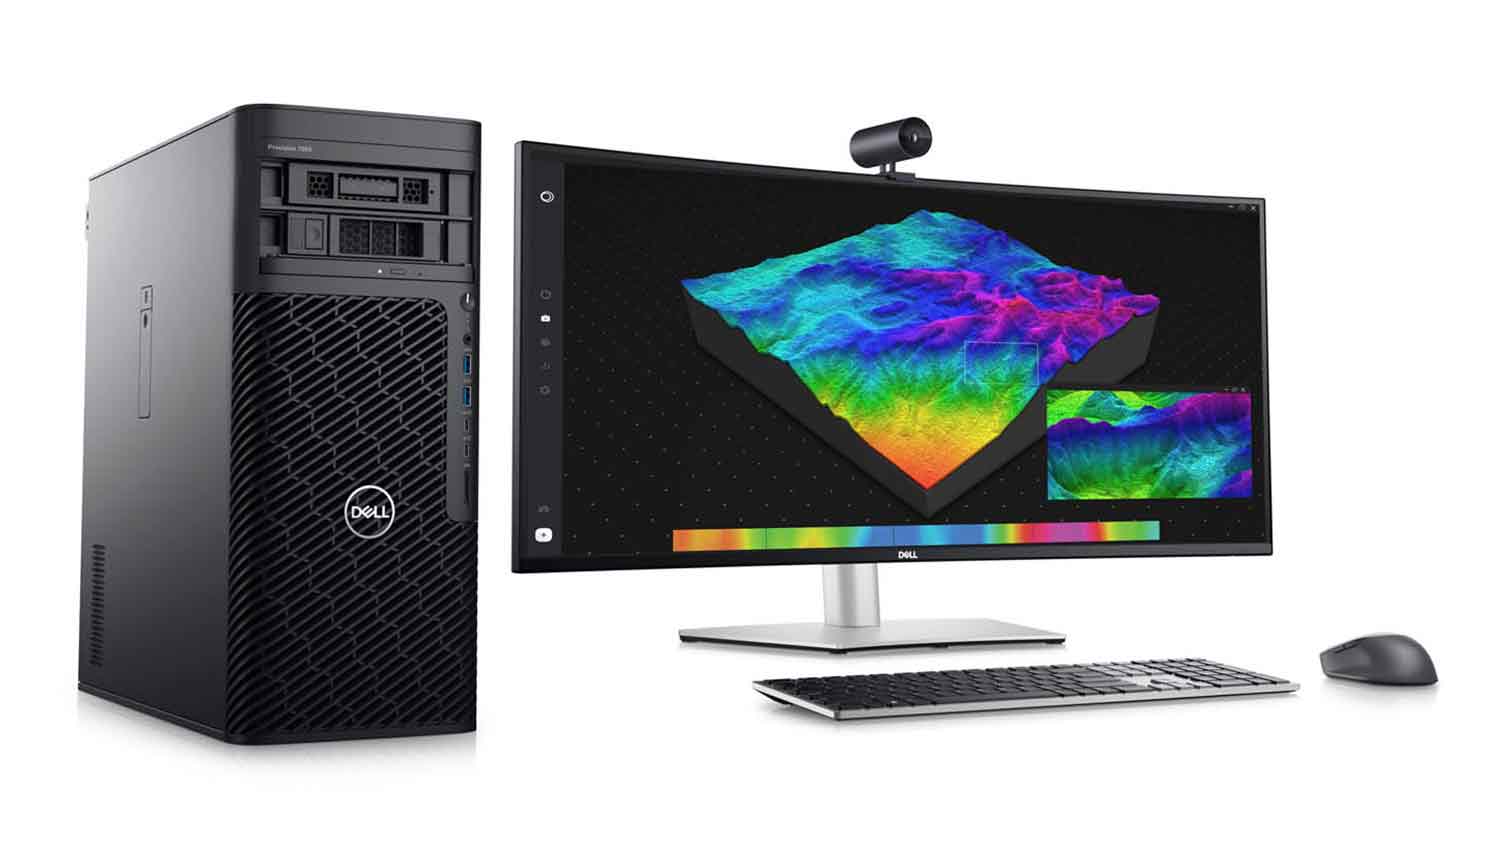 AMD unveils Threadripper Pro workstation and high-end desktop